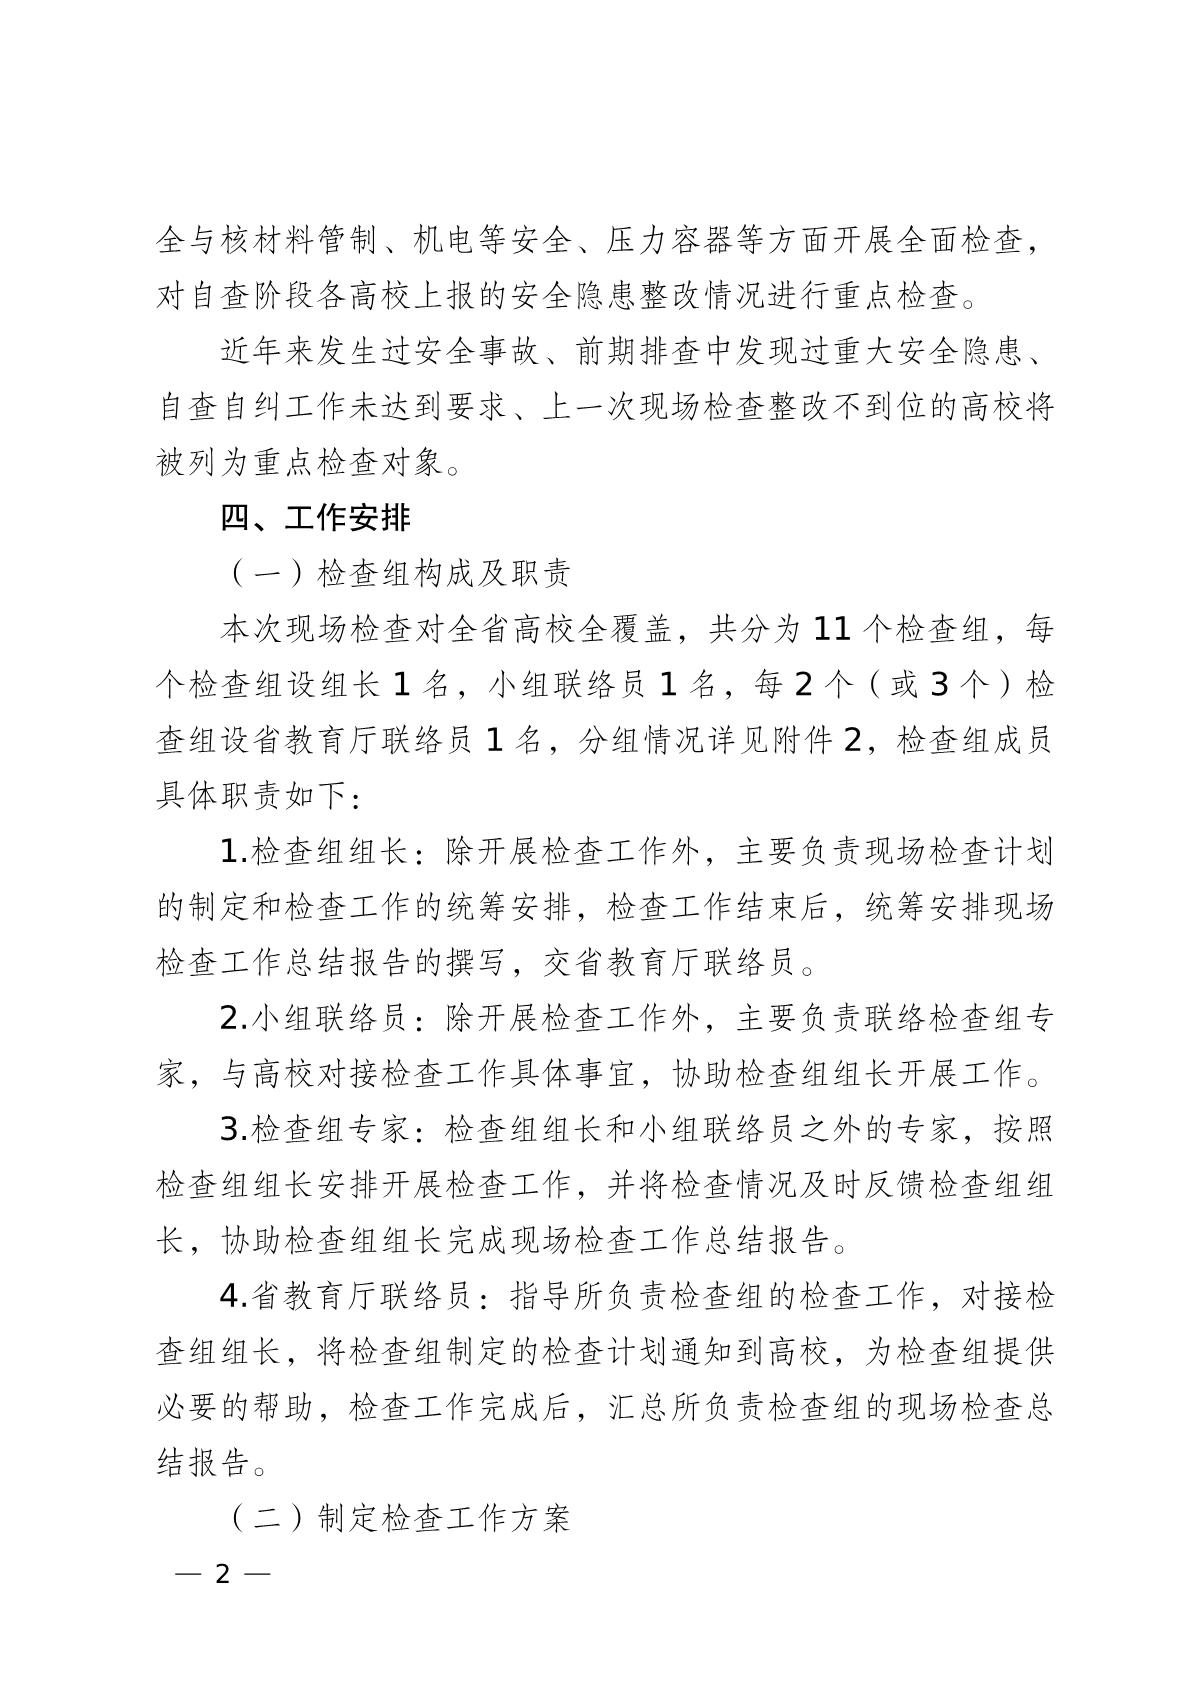 云南省教育厅关于组织开展2022年高等学校实验室安全现场检查工作的通知_2.jpg